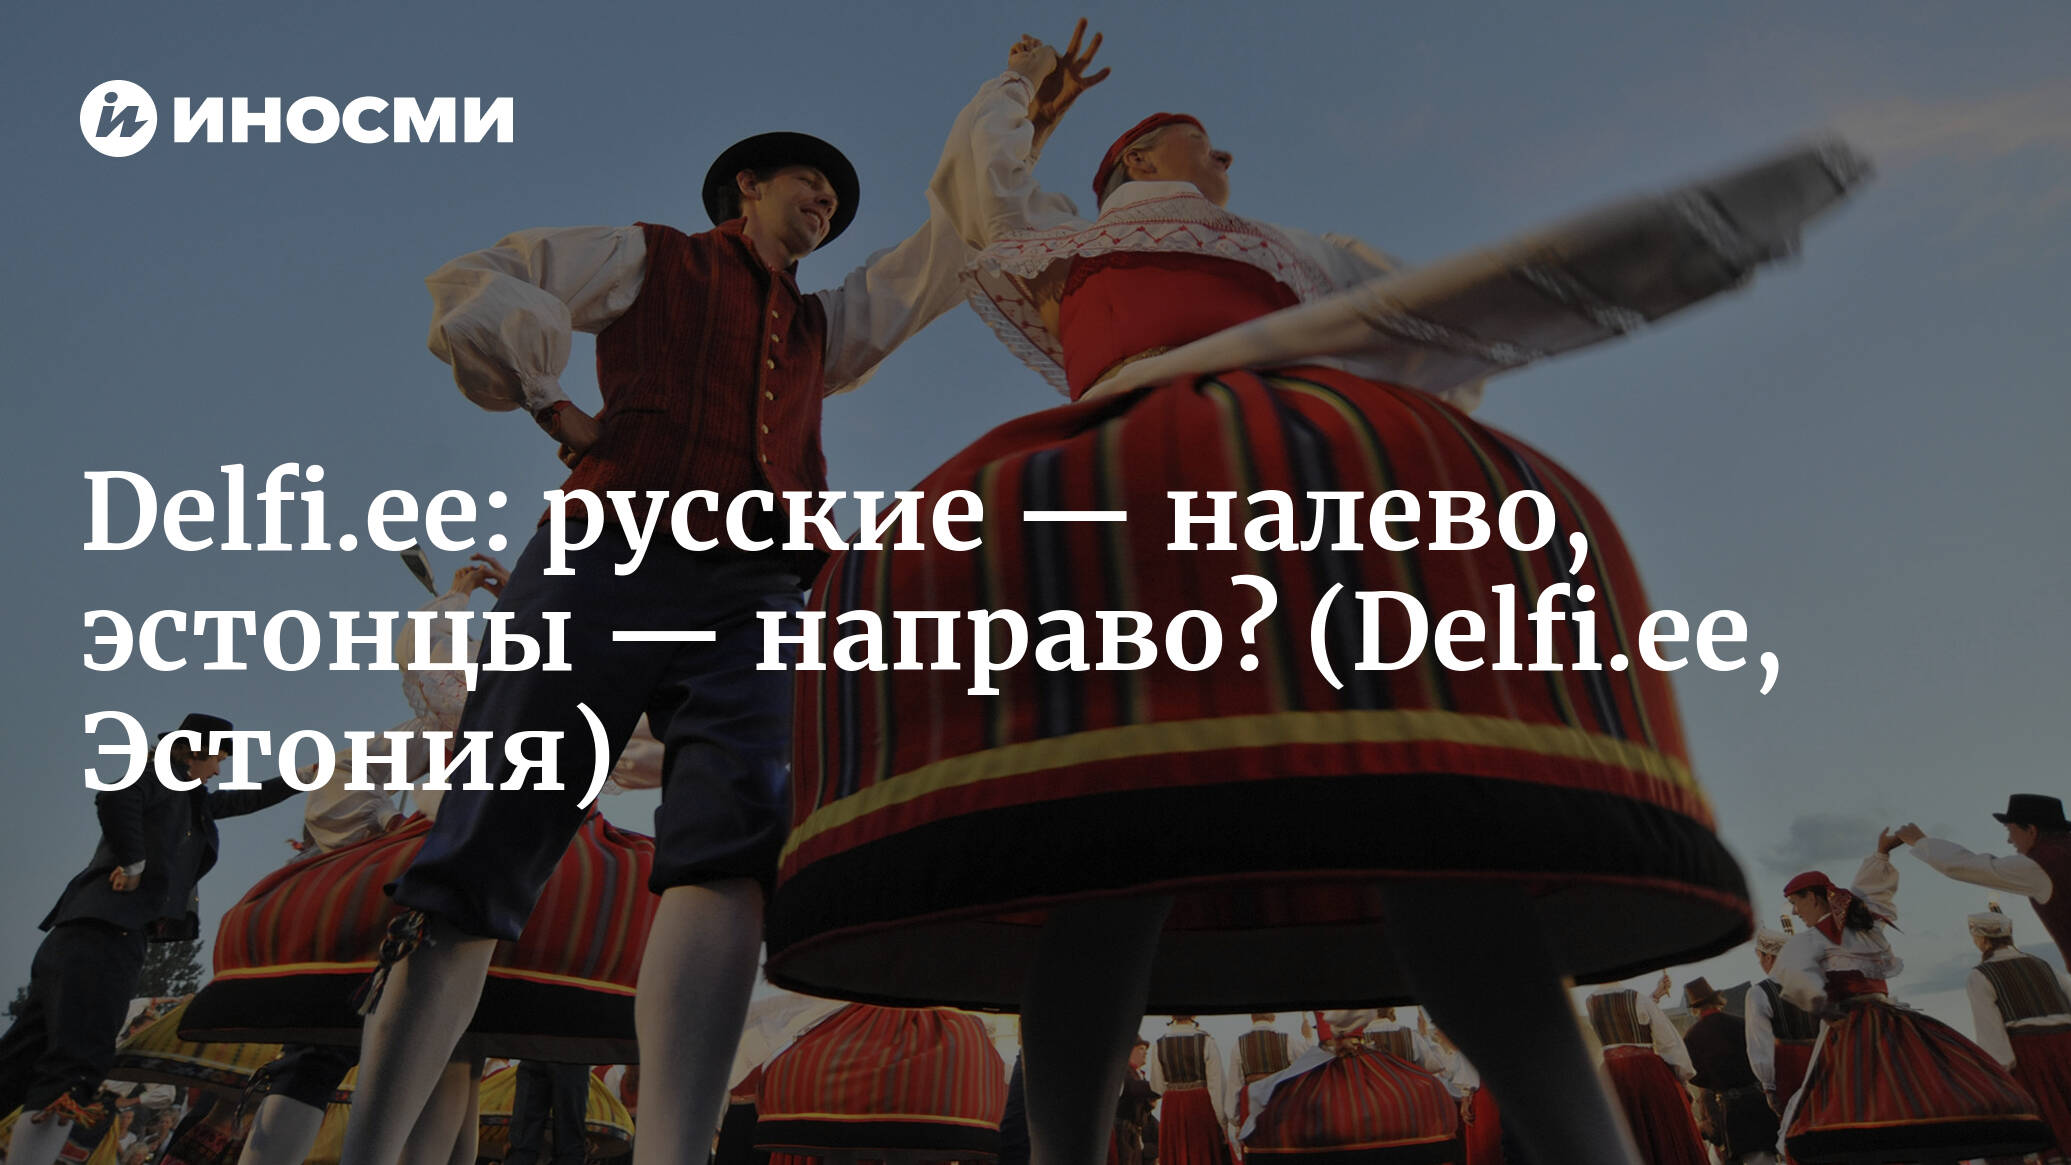 Delfi (Эстония): так что, все-таки русским — налево, а эстонцам — направо?  , ИноСМИ